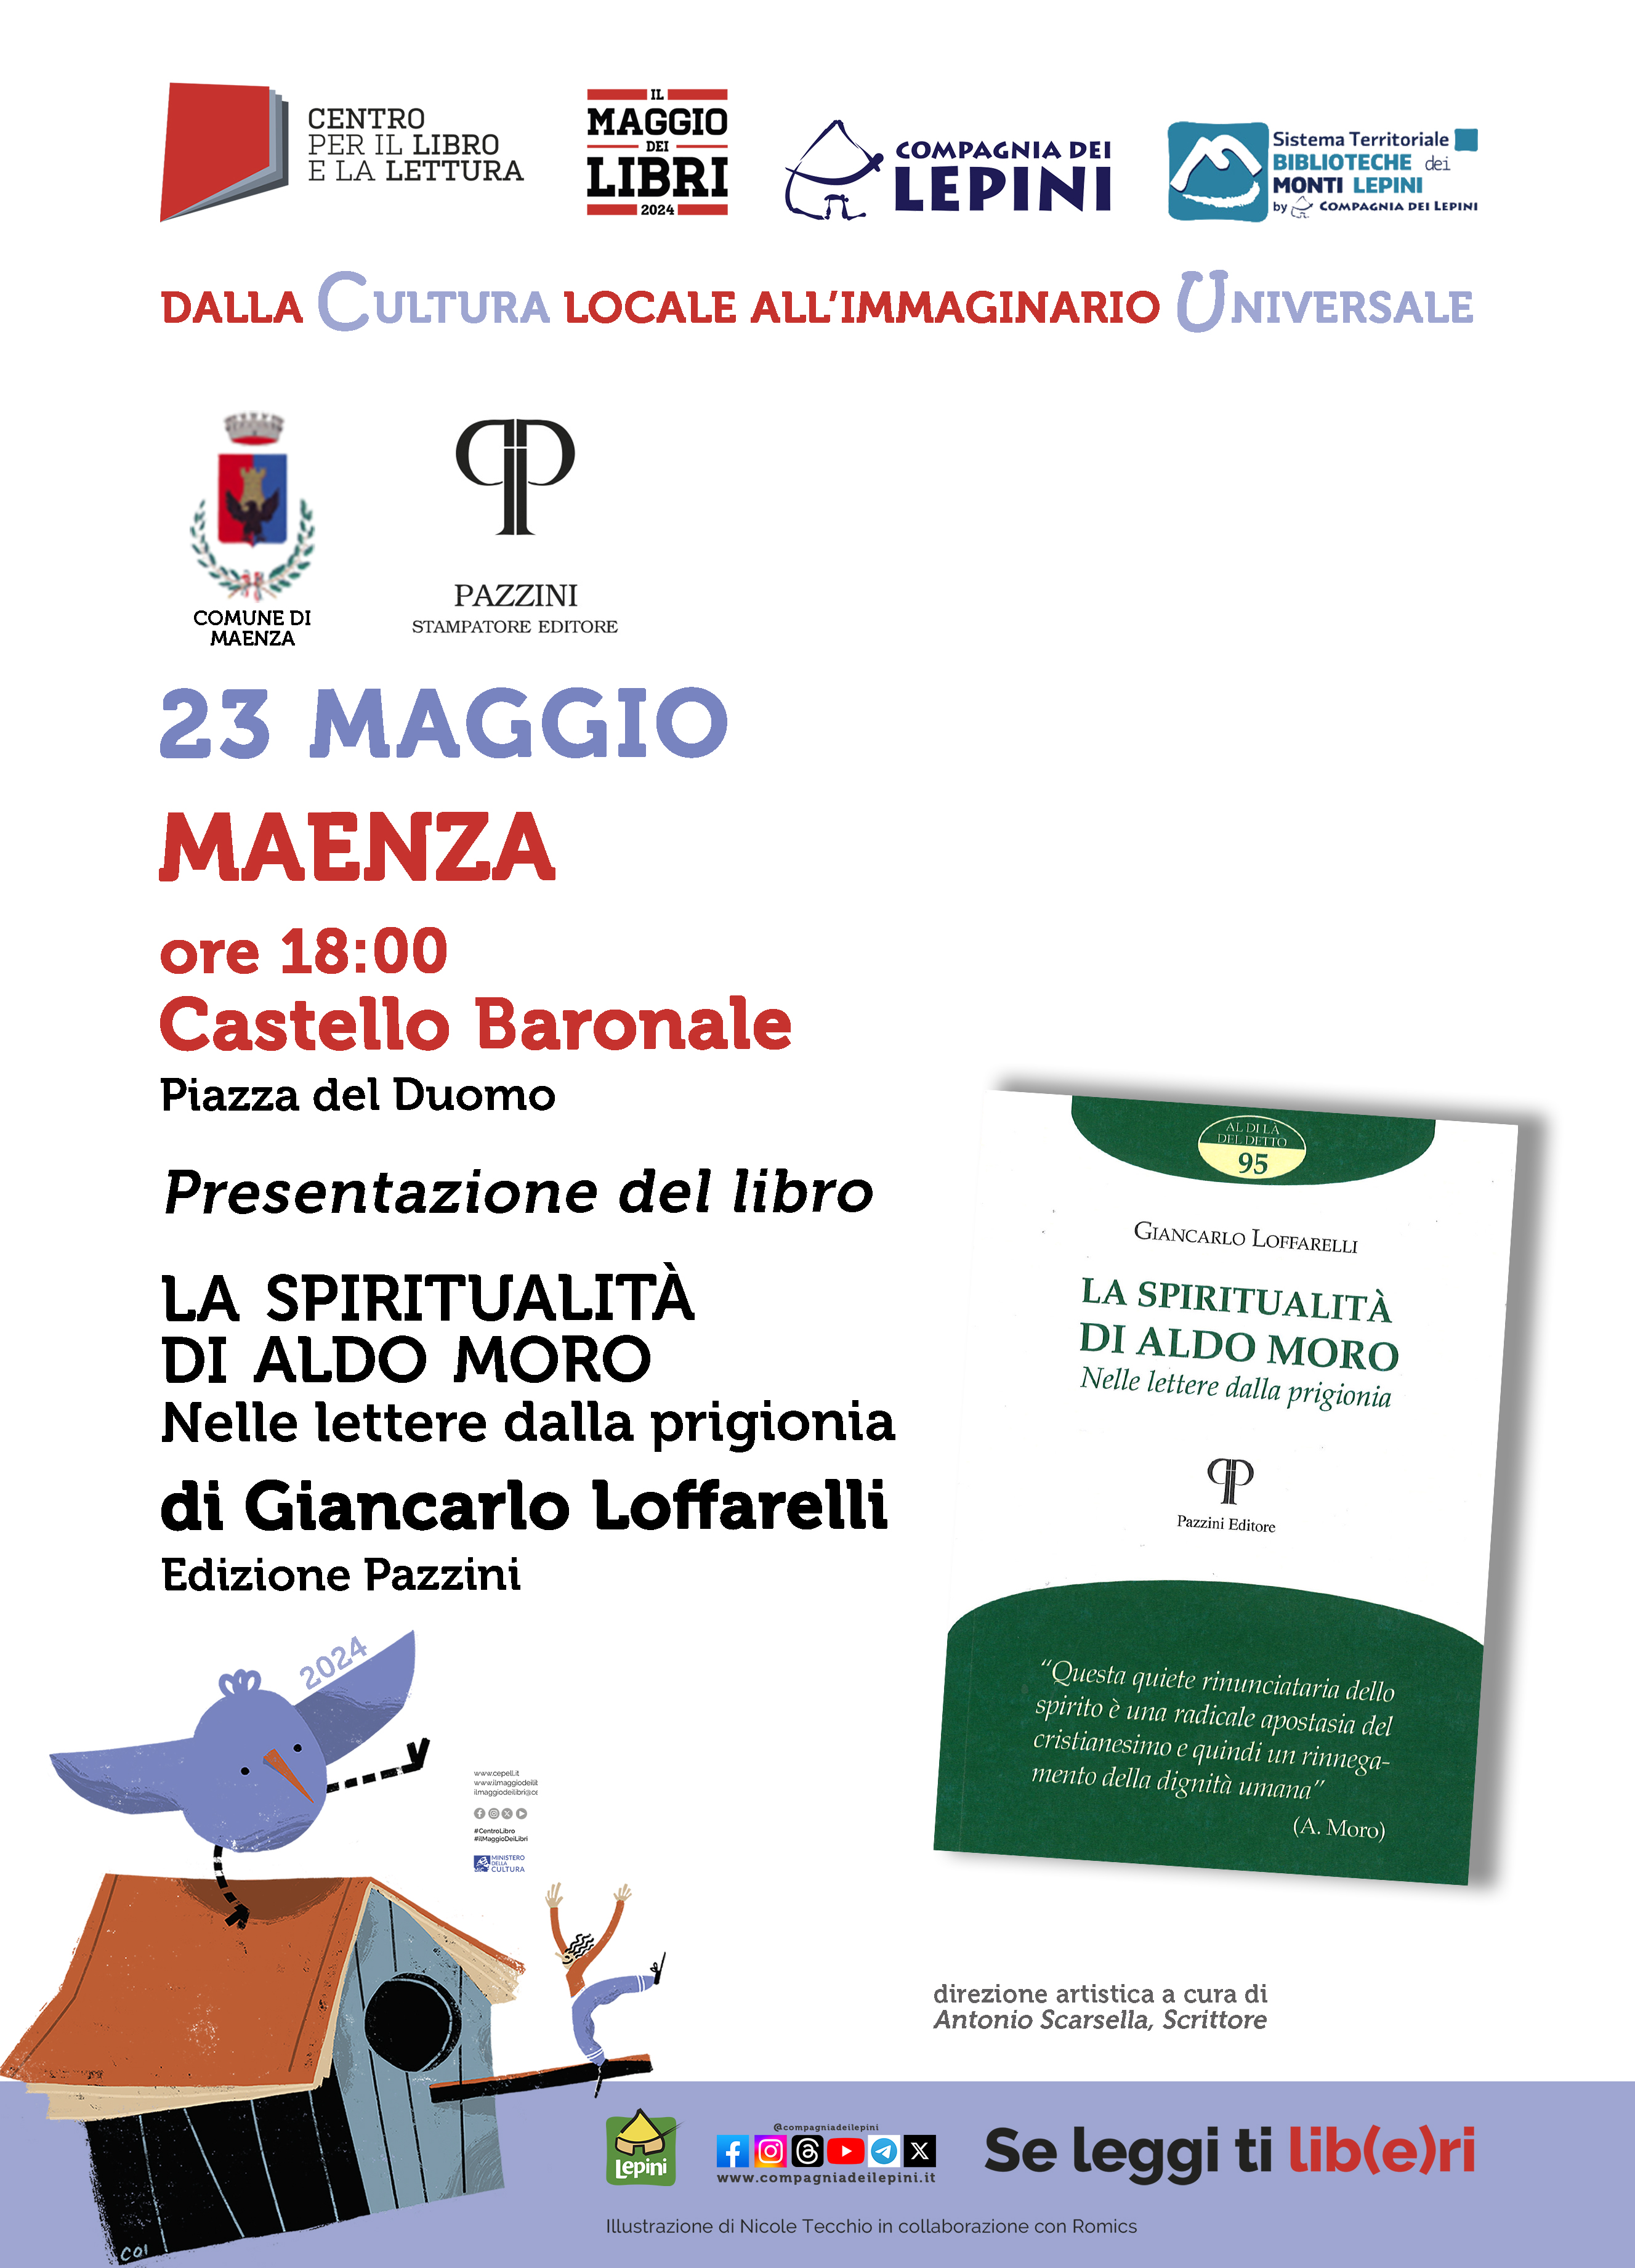 Il Maggio dei Libri a Maenza: Presentazione del libro "La spiritualità di Aldo Moro" di Giancarlo Loffarelli @ Castello Baronale